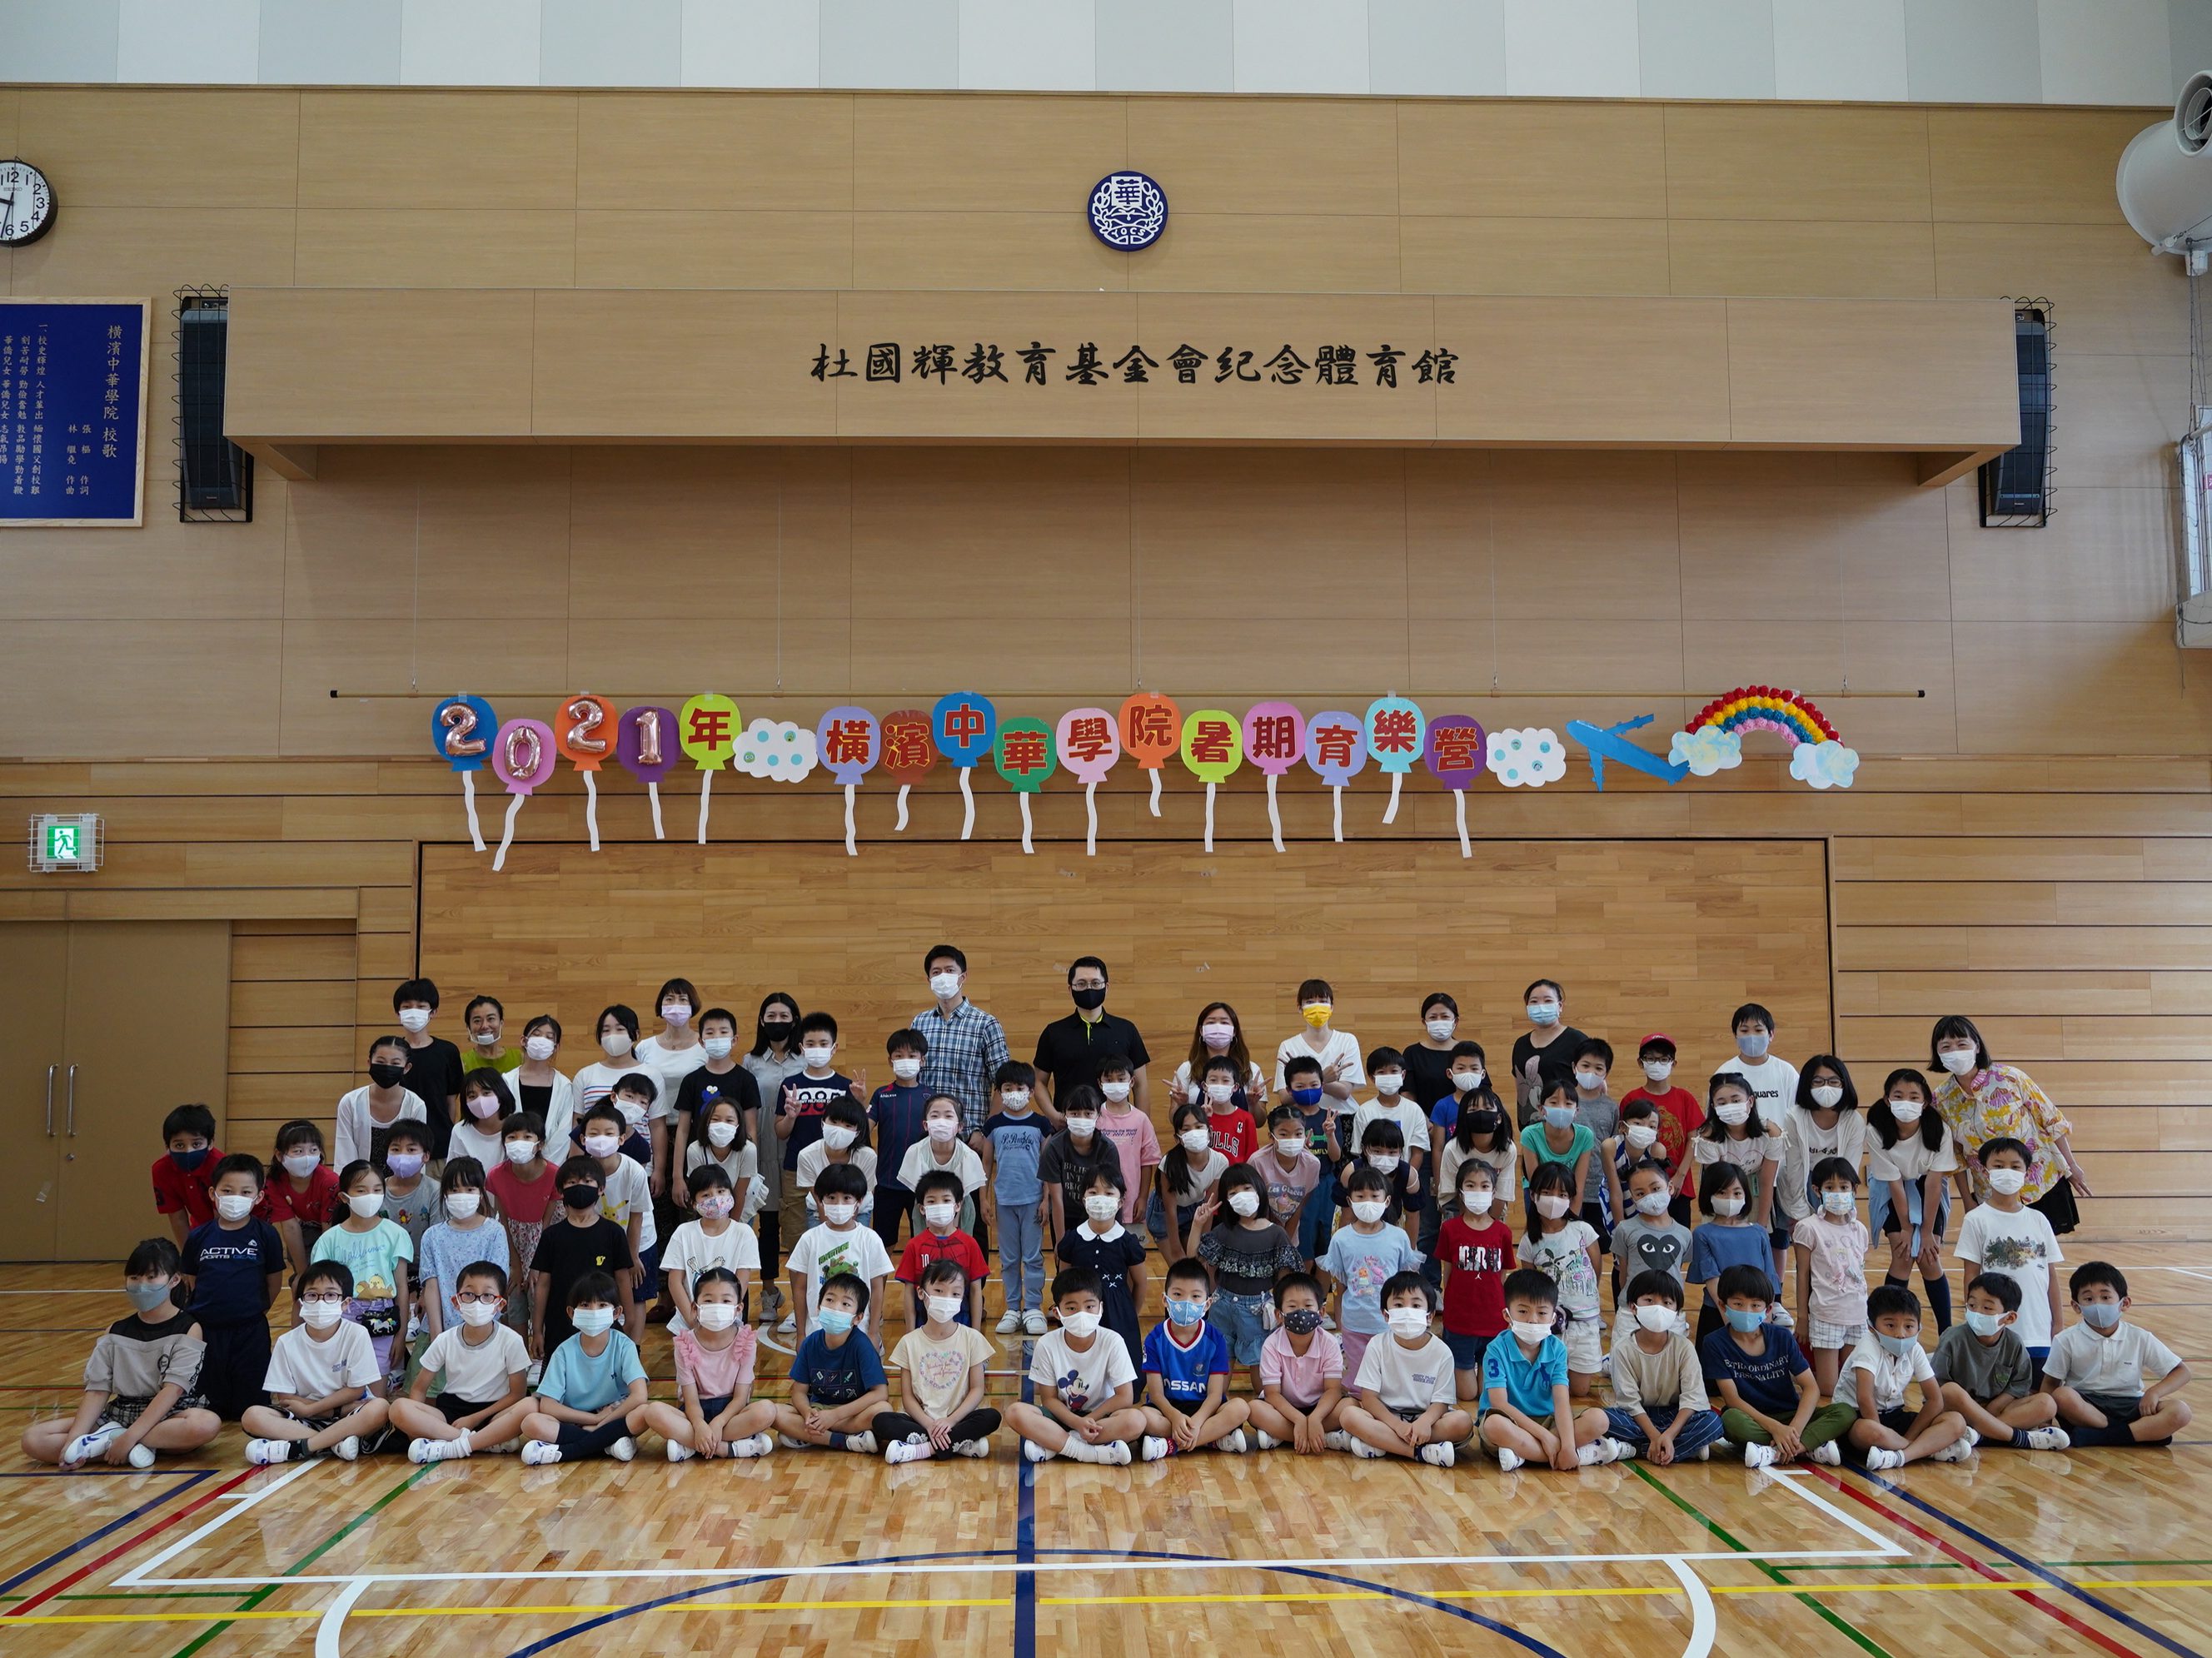 橫濱中華學院2021年度暑期育樂營圖片